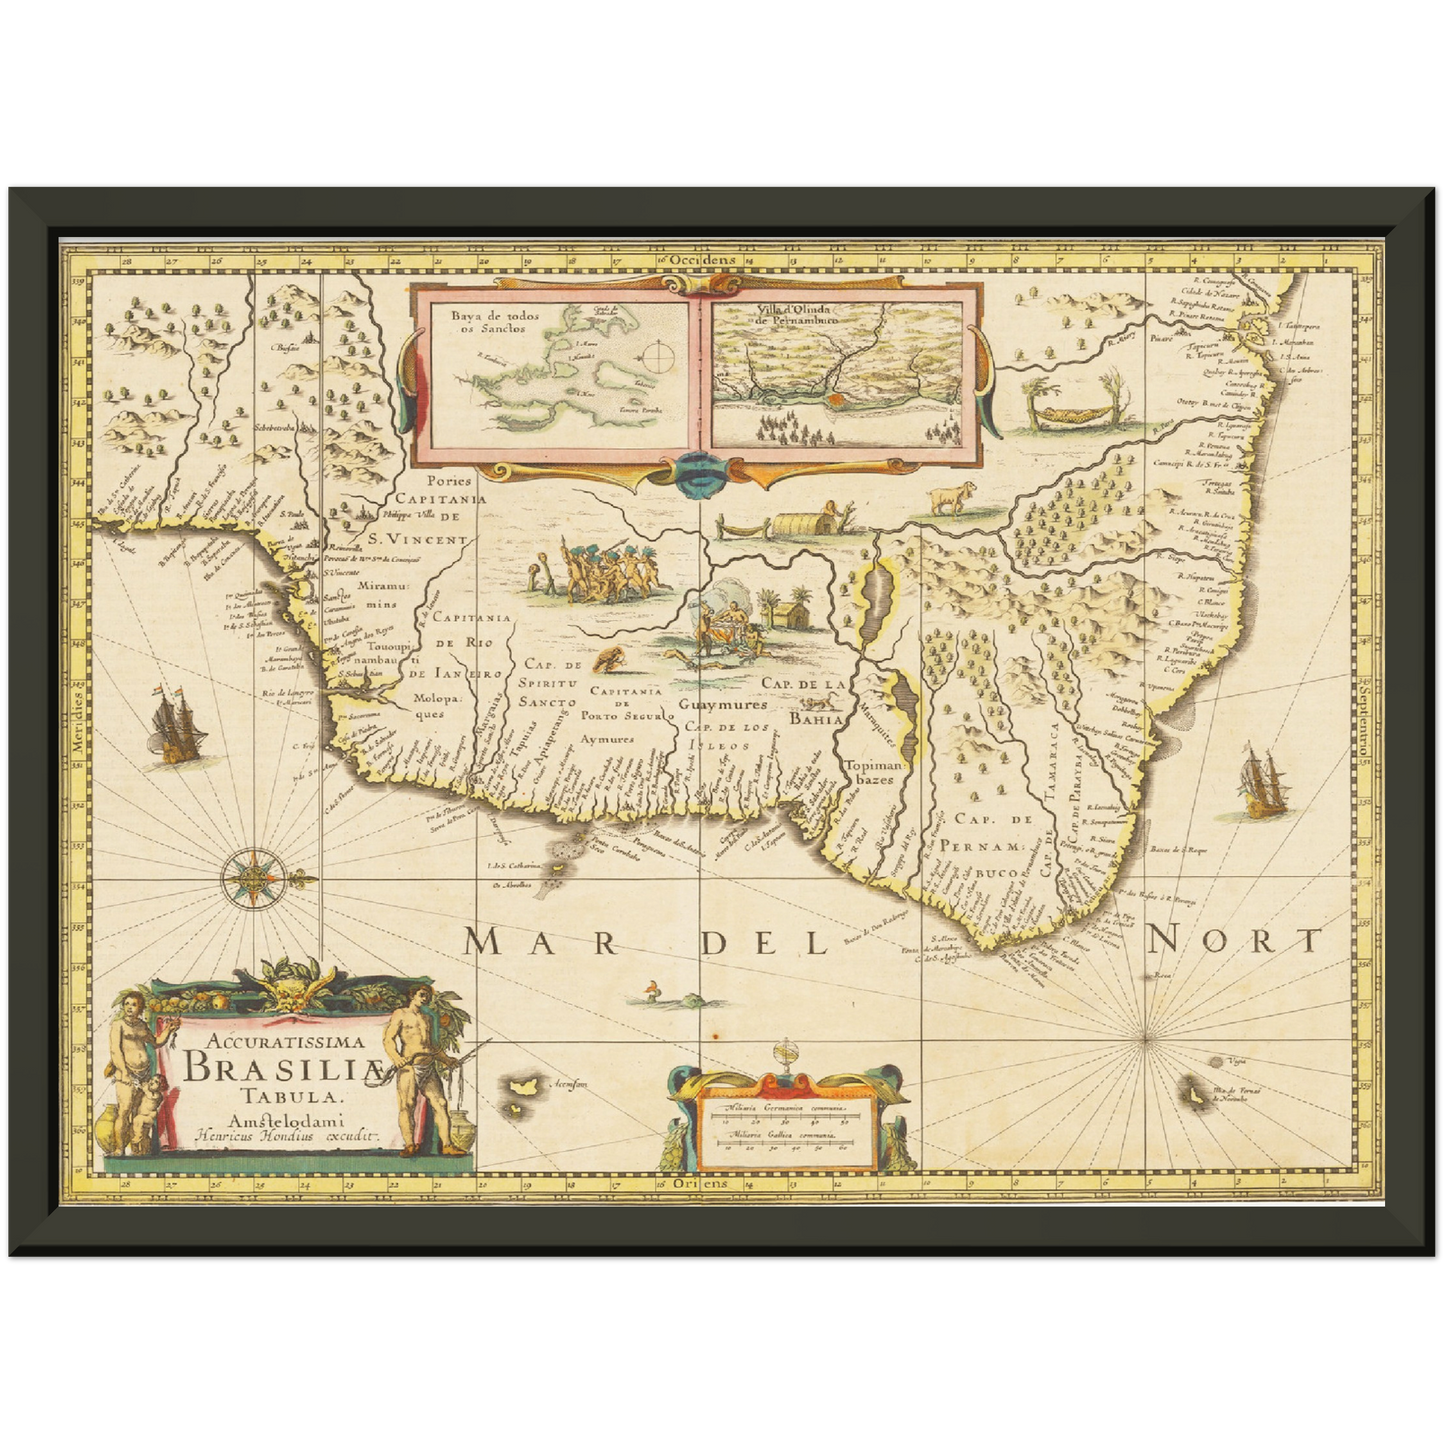 Historische Landkarte Brasilien um 1638